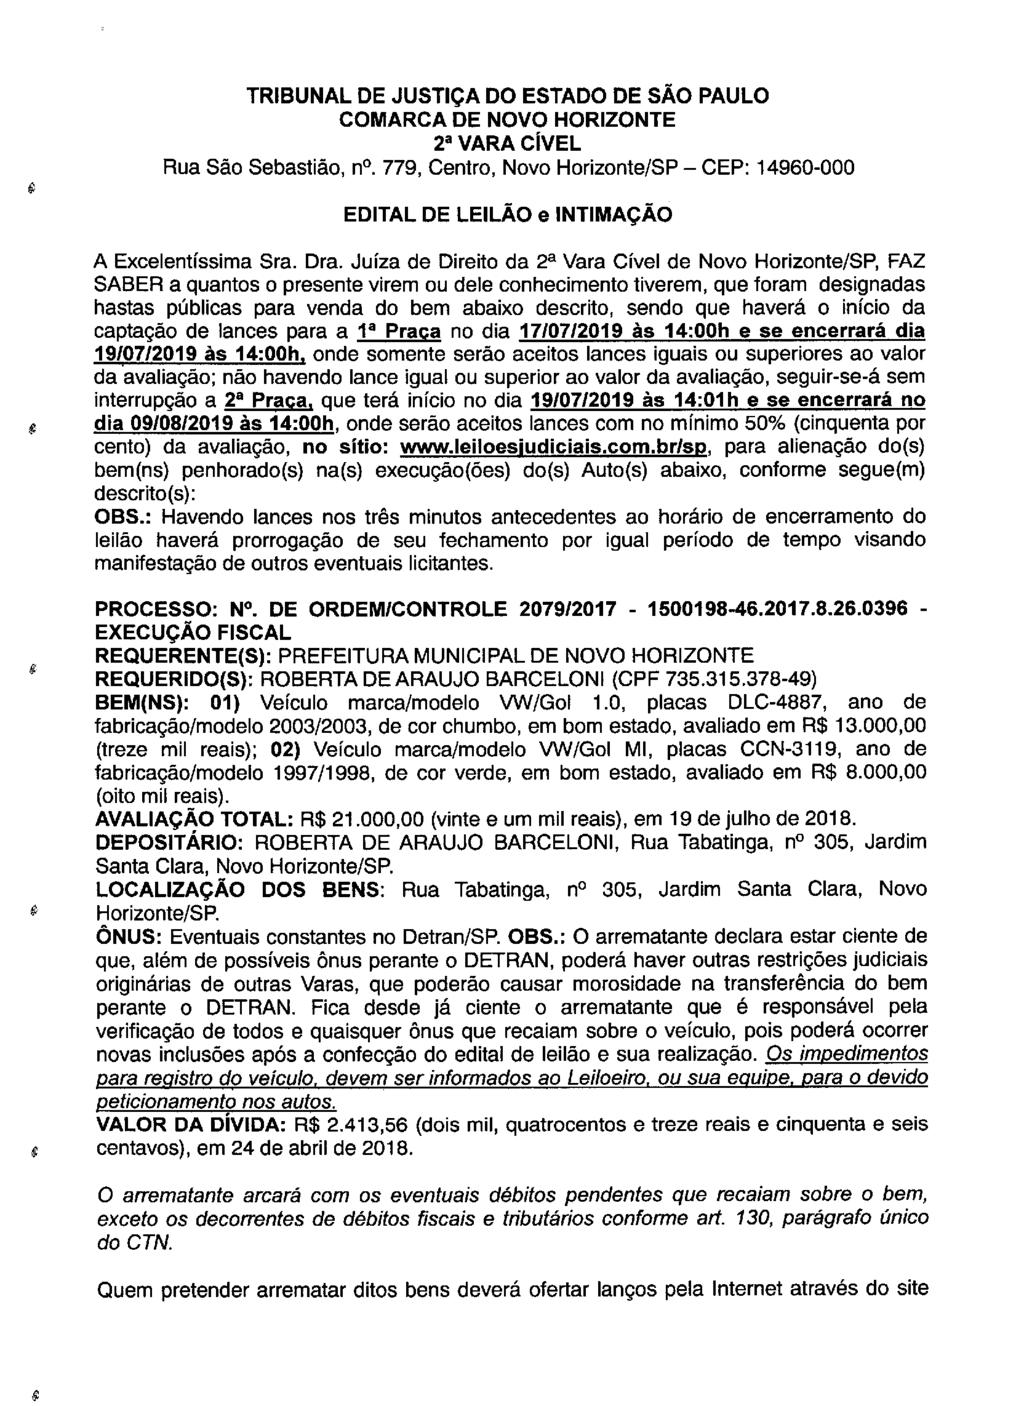 fls. 58 Este documento é cópia do original, assinado digitalmente por LUZIA REGIS DE OLIVEIRA DUARTE, liberado nos autos em 30/04/2019 às 14:49.